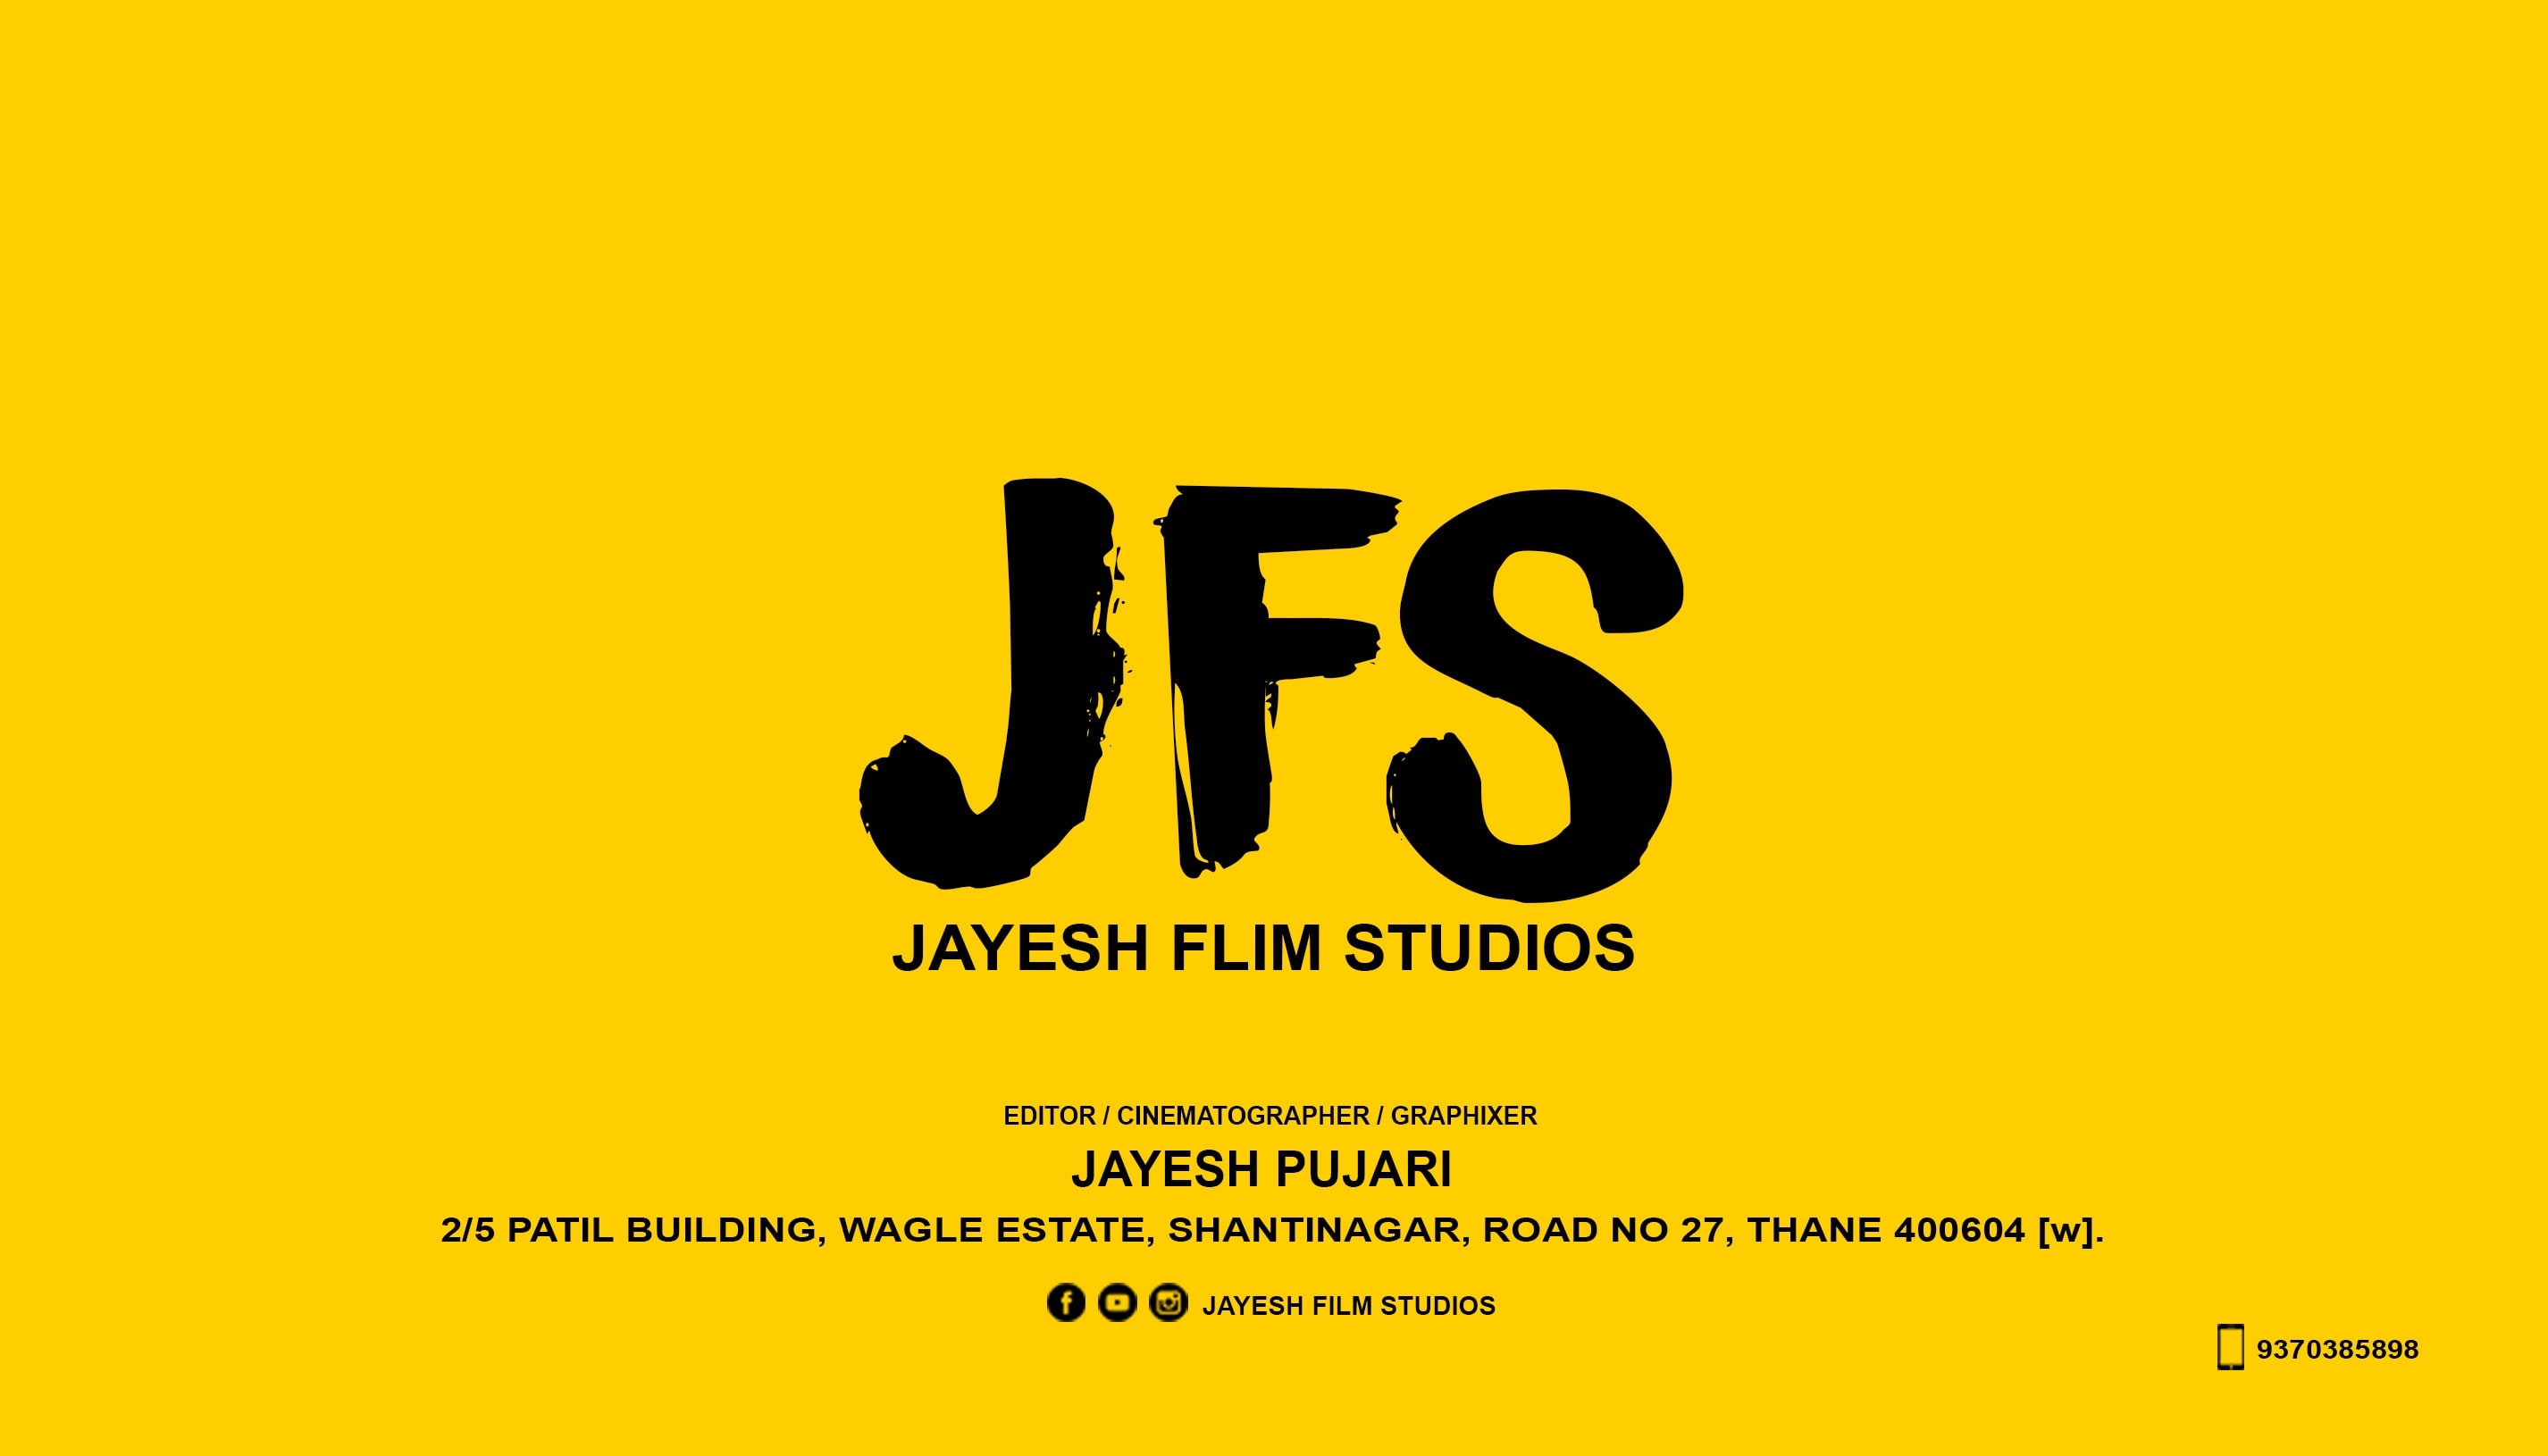 Jayesh Film Studios